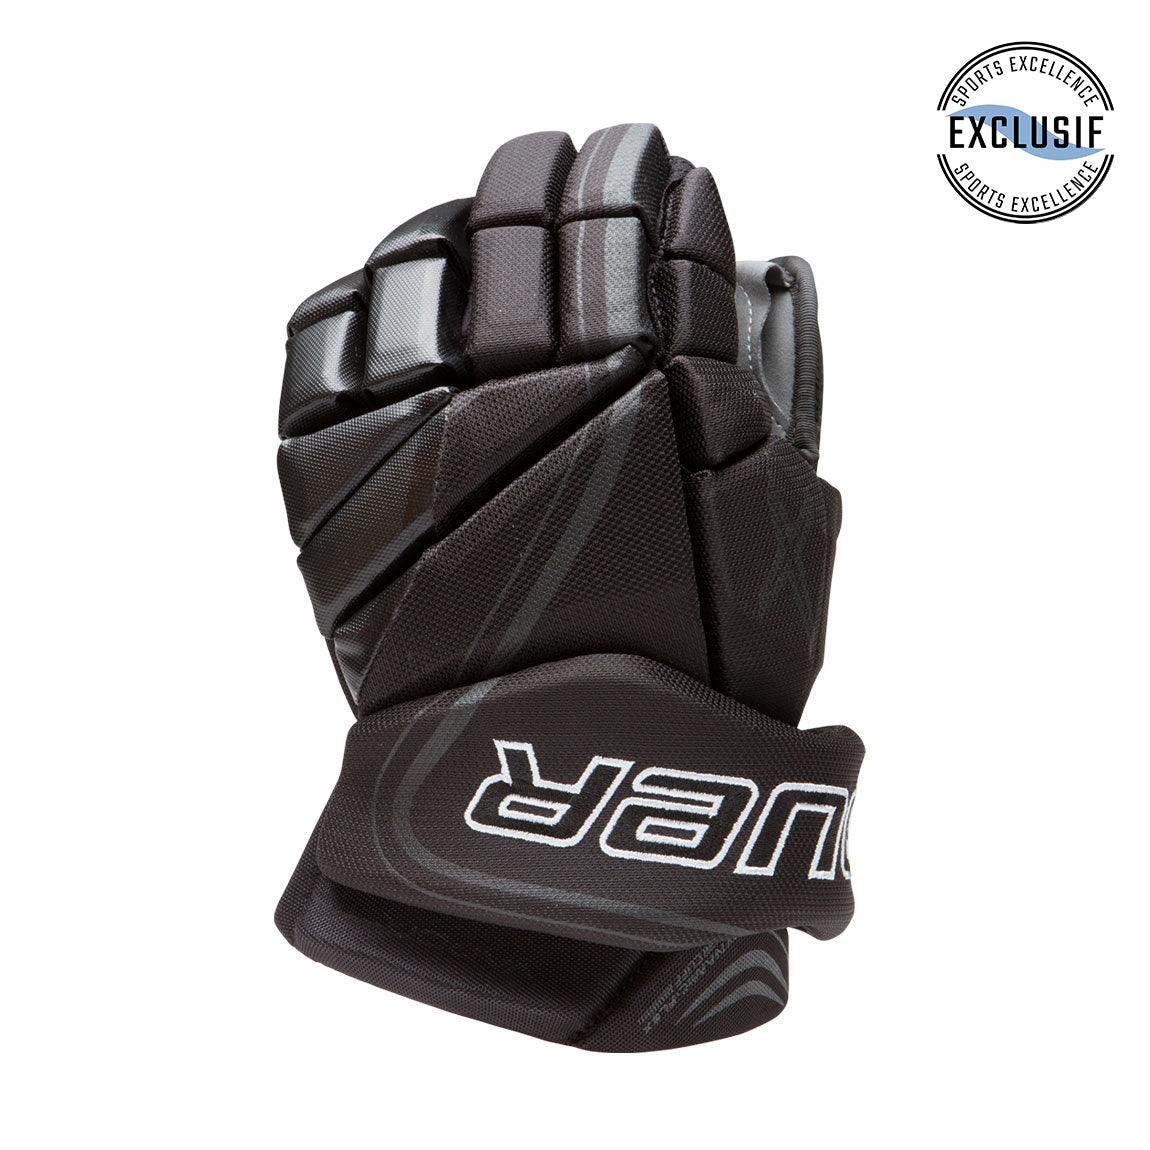 Senior Vapor LTX Pro Hockey Gloves